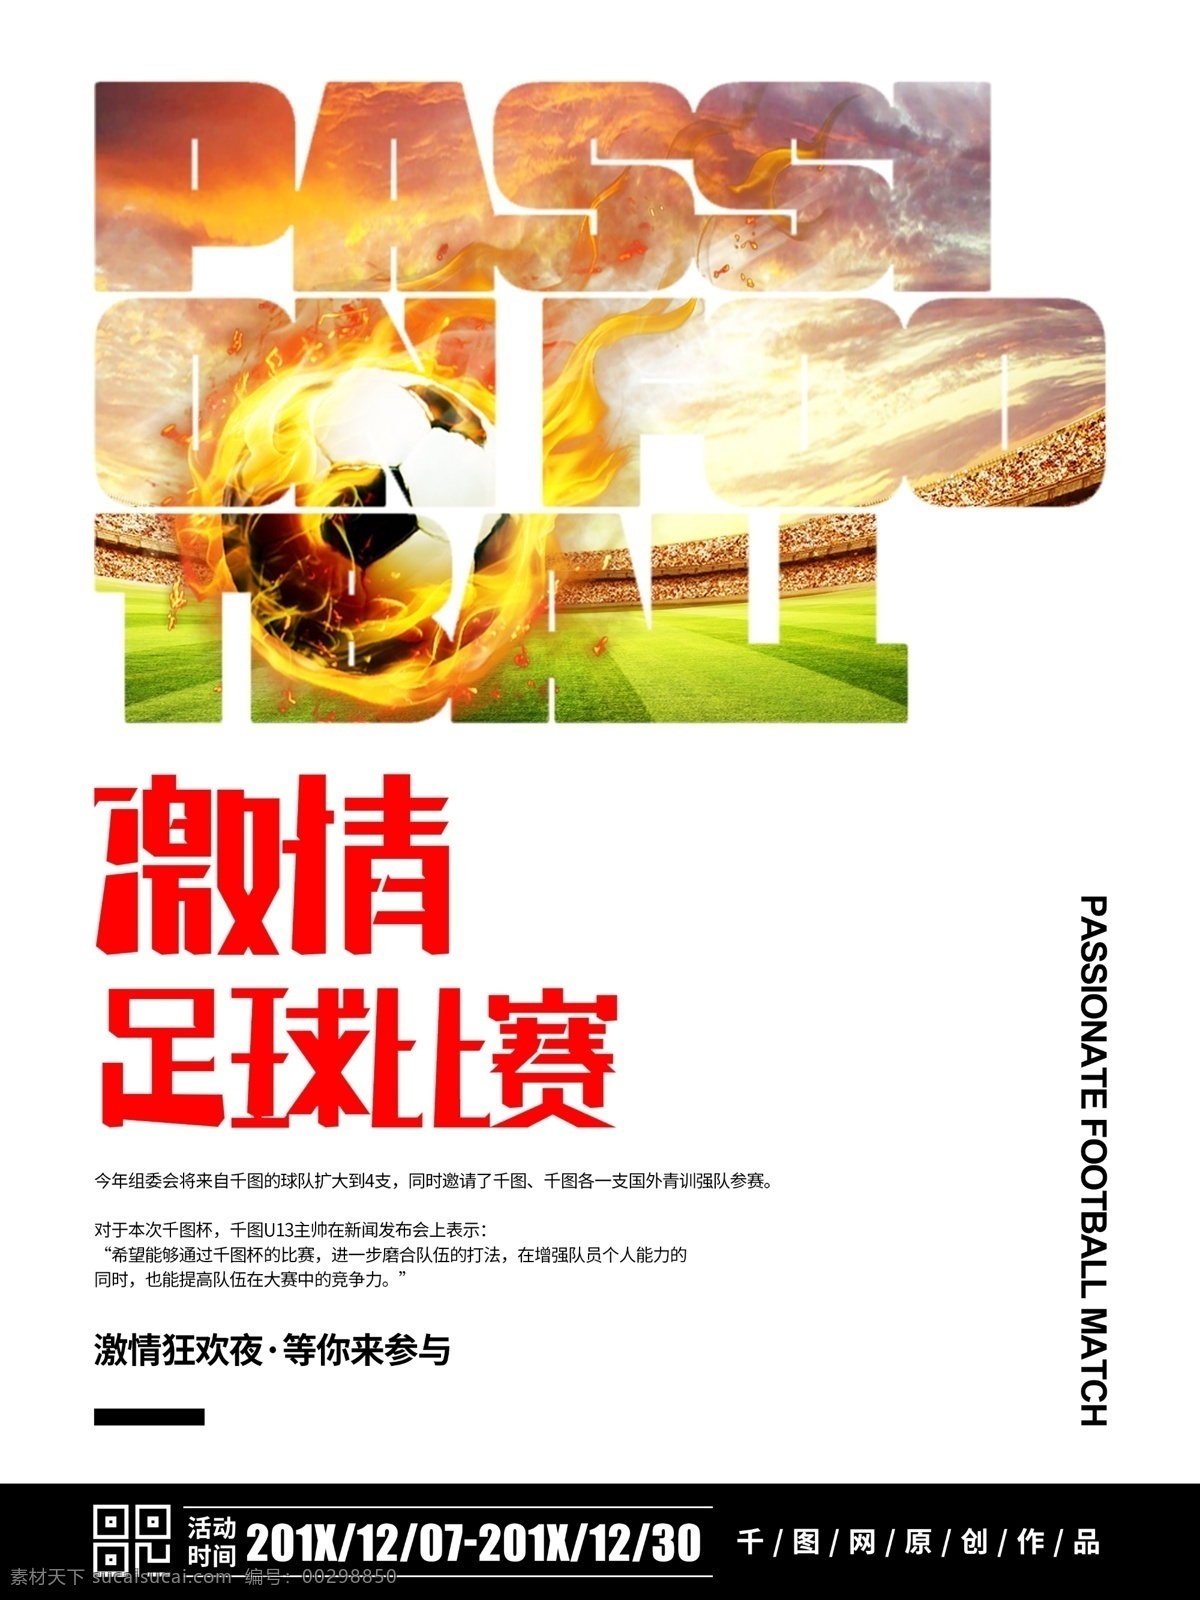 简约 大气 足球比赛 宣传海报 足球 比赛 运动 足球海报 运动海报 足球宣传